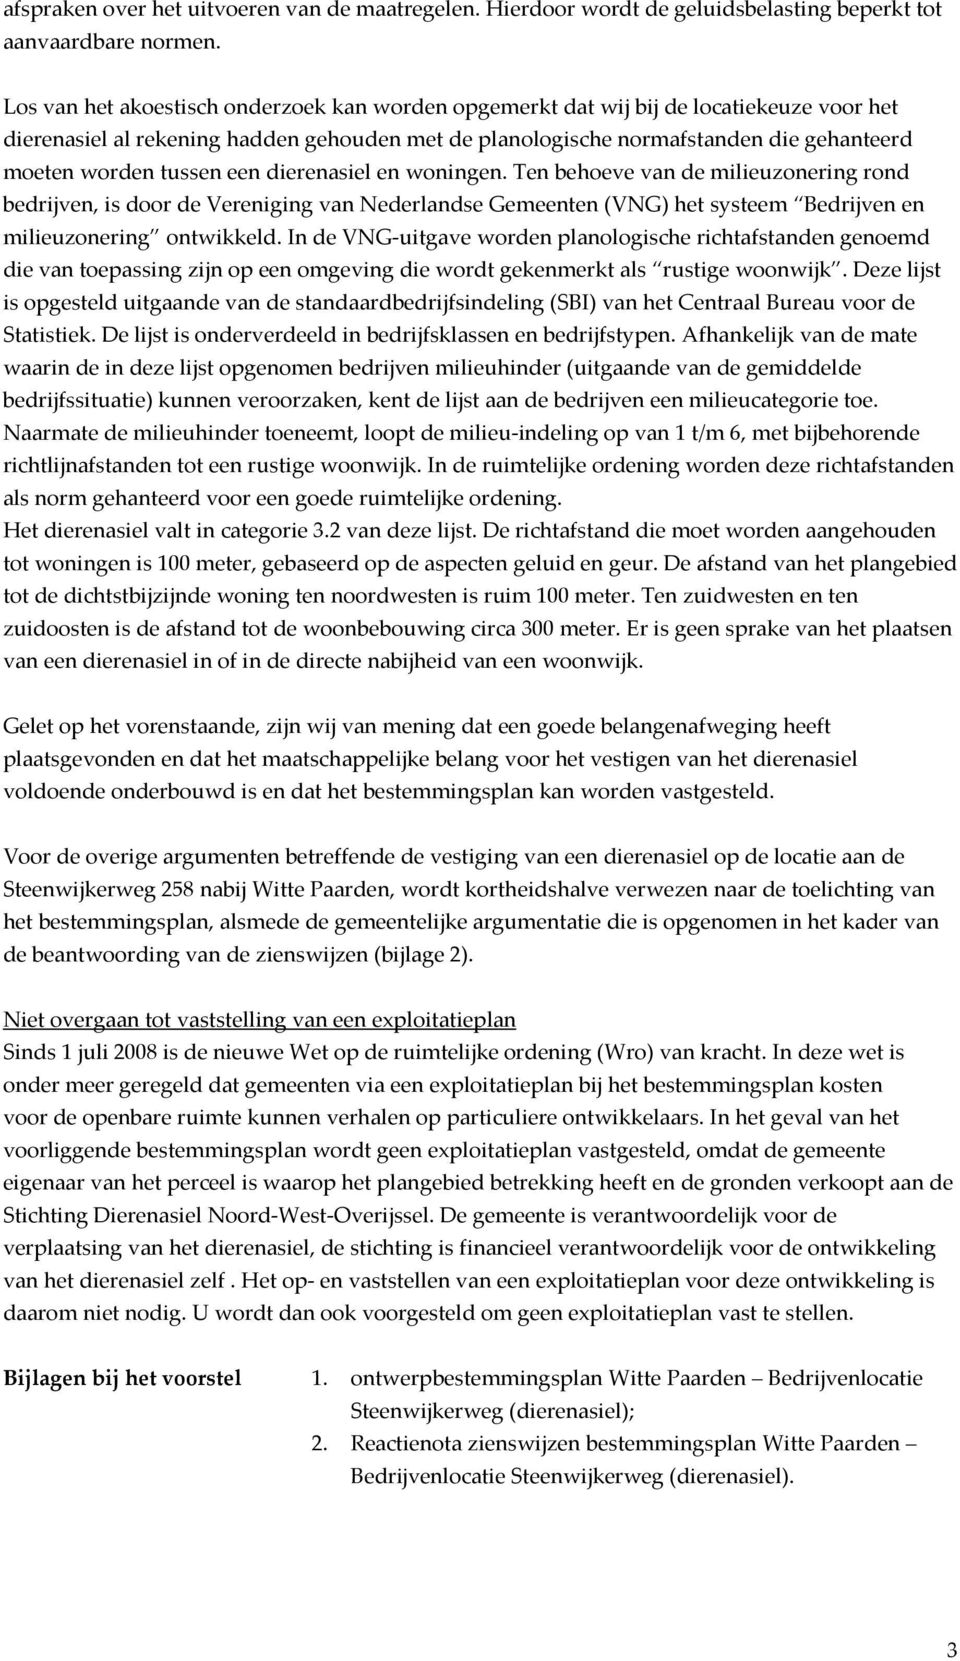 tussen een dierenasiel en woningen. Ten behoeve van de milieuzonering rond bedrijven, is door de Vereniging van Nederlandse Gemeenten (VNG) het systeem Bedrijven en milieuzonering ontwikkeld.